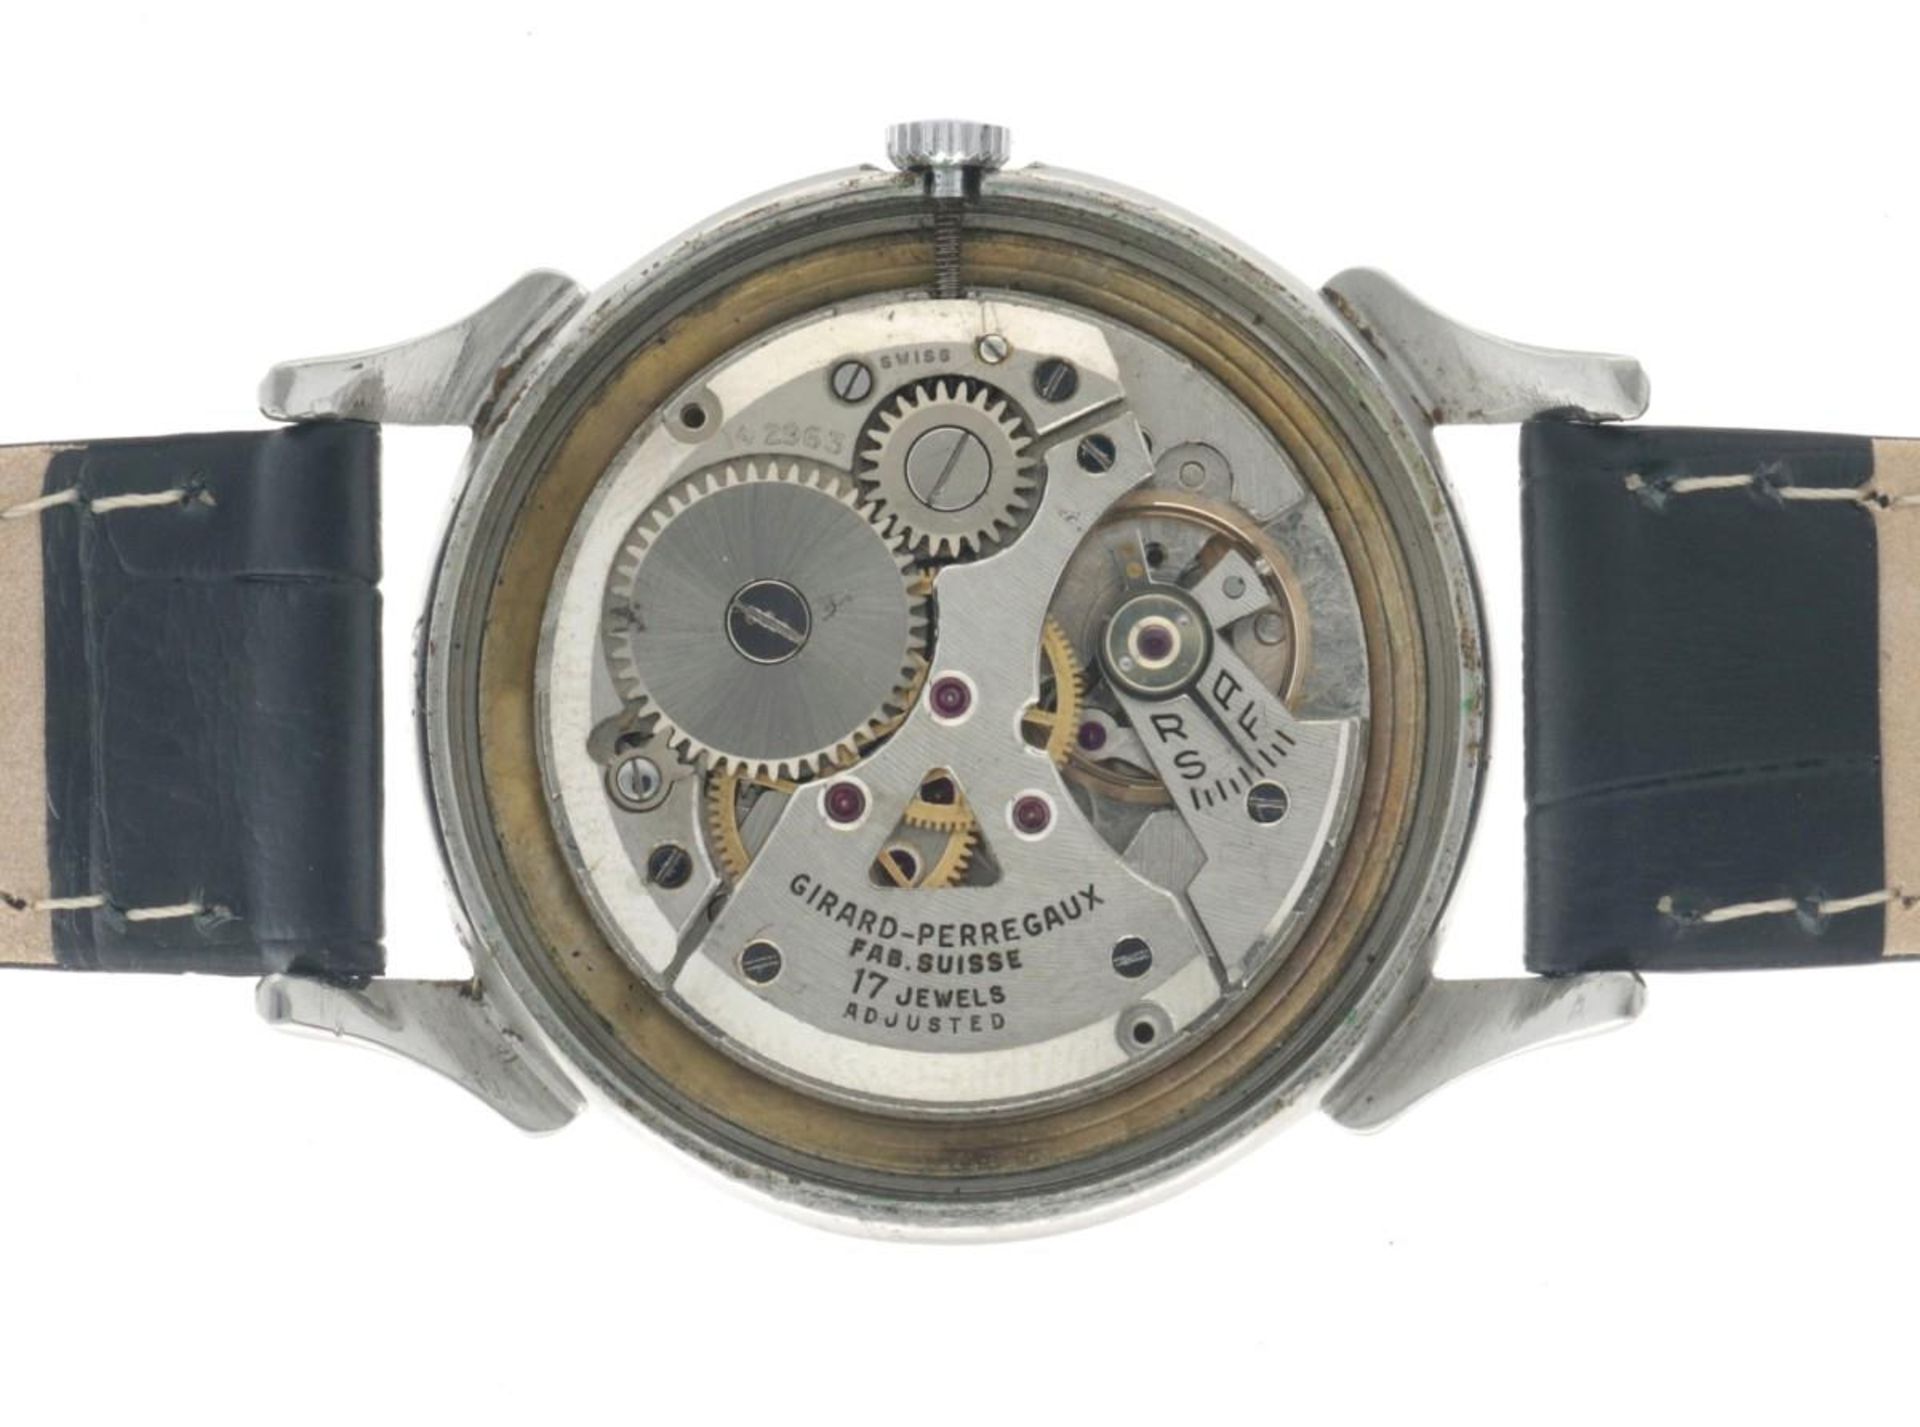 Girard-Perregaux Dogleg 494779 - Men's watch - approx. 1950. - Image 11 of 14